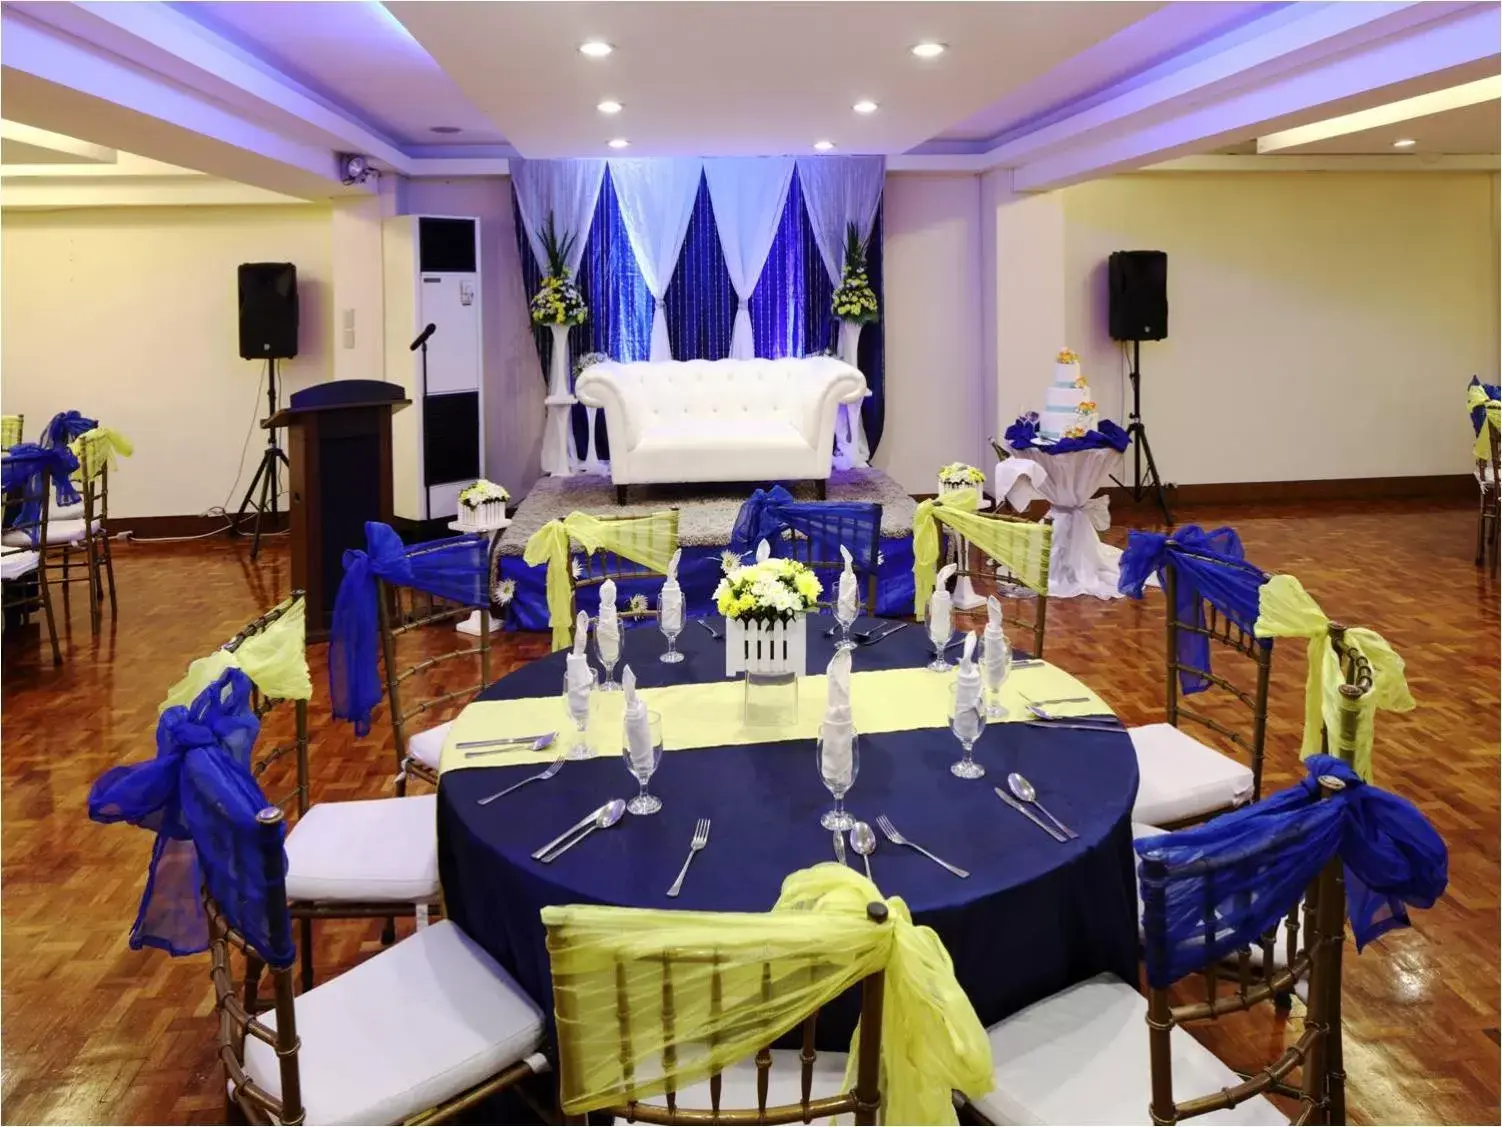 Banquet/Function facilities, Banquet Facilities in Manila Lotus Hotel